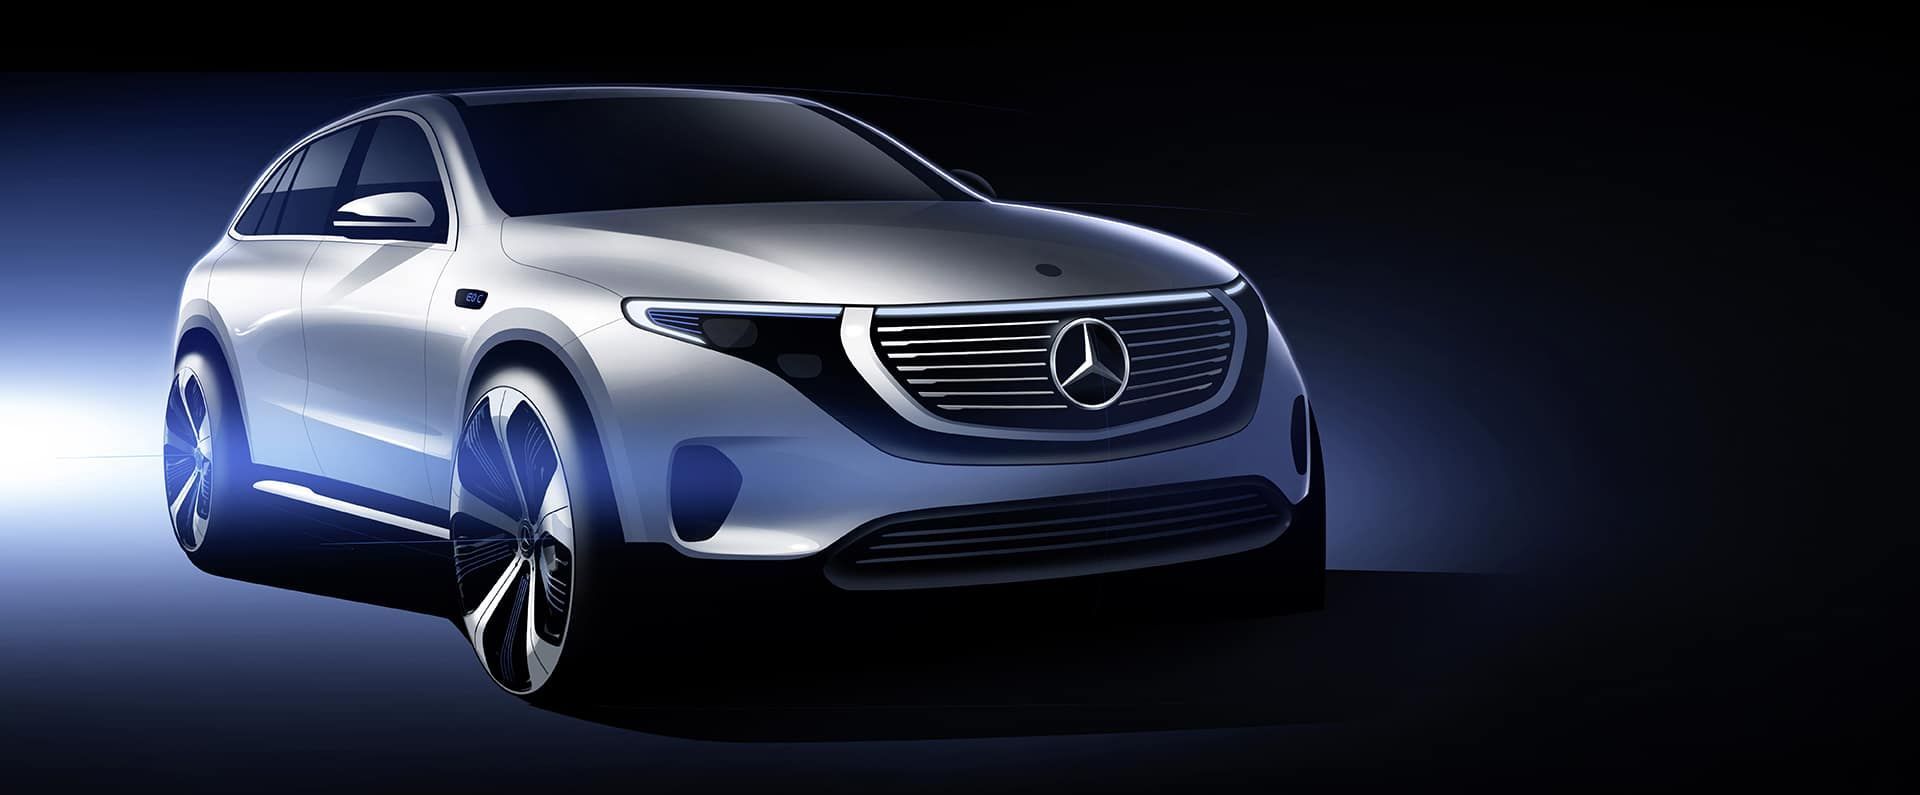 The new Mercedes-Benz EQC.